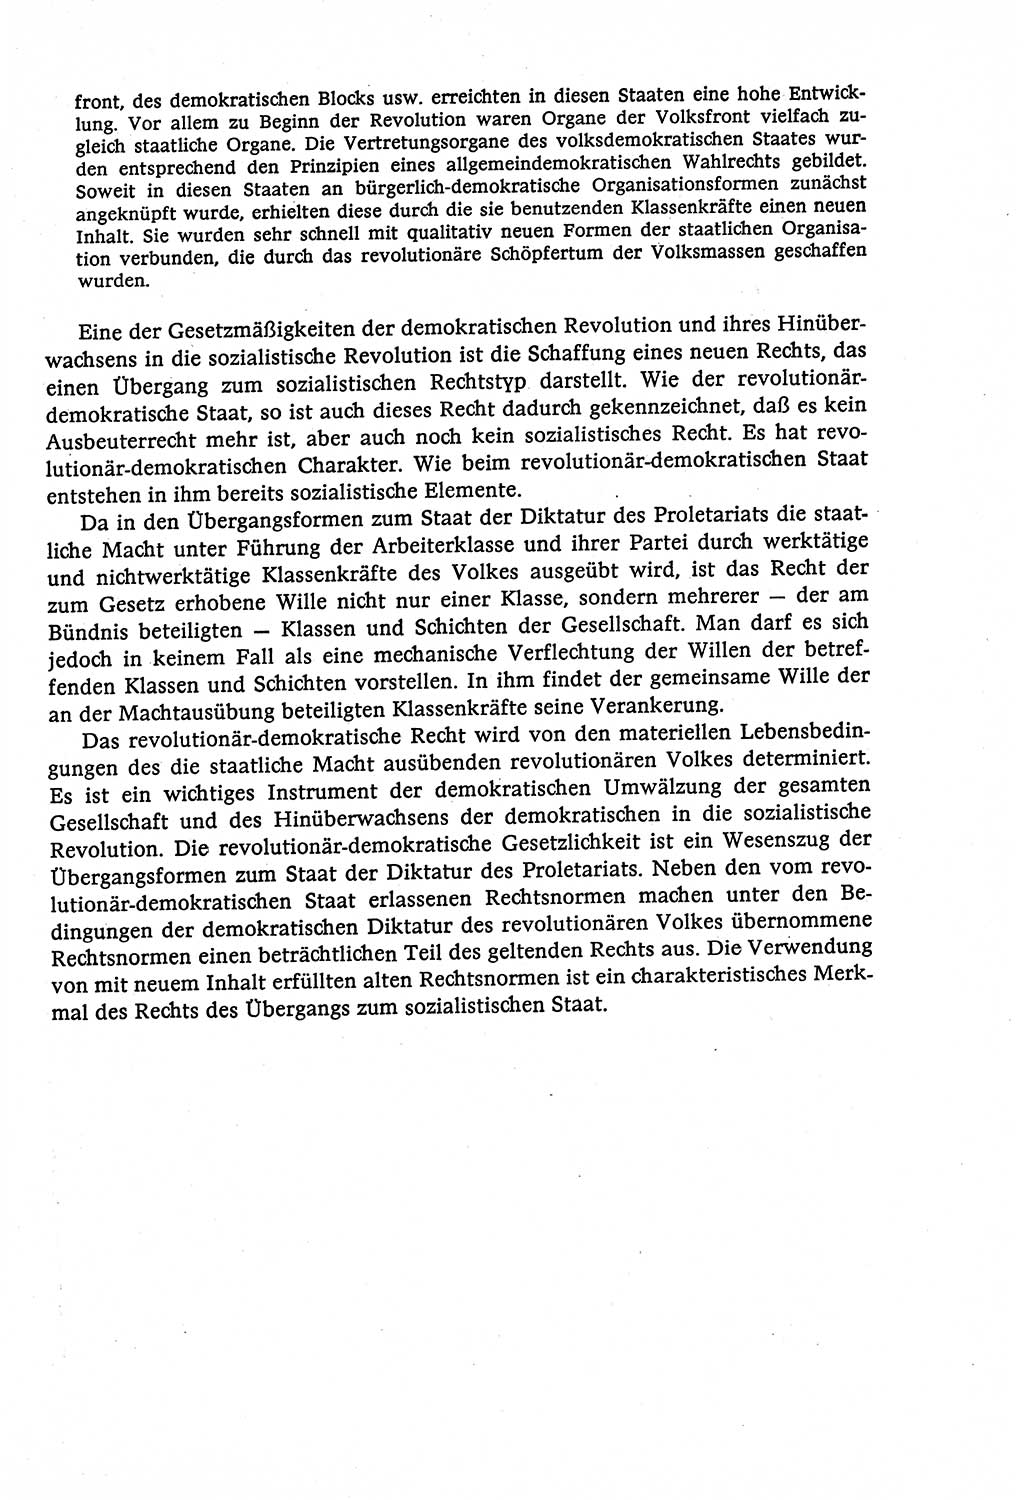 Marxistisch-leninistische (ML) Staats- und Rechtstheorie [Deutsche Demokratische Republik (DDR)], Lehrbuch 1980, Seite 233 (ML St.-R.-Th. DDR Lb. 1980, S. 233)